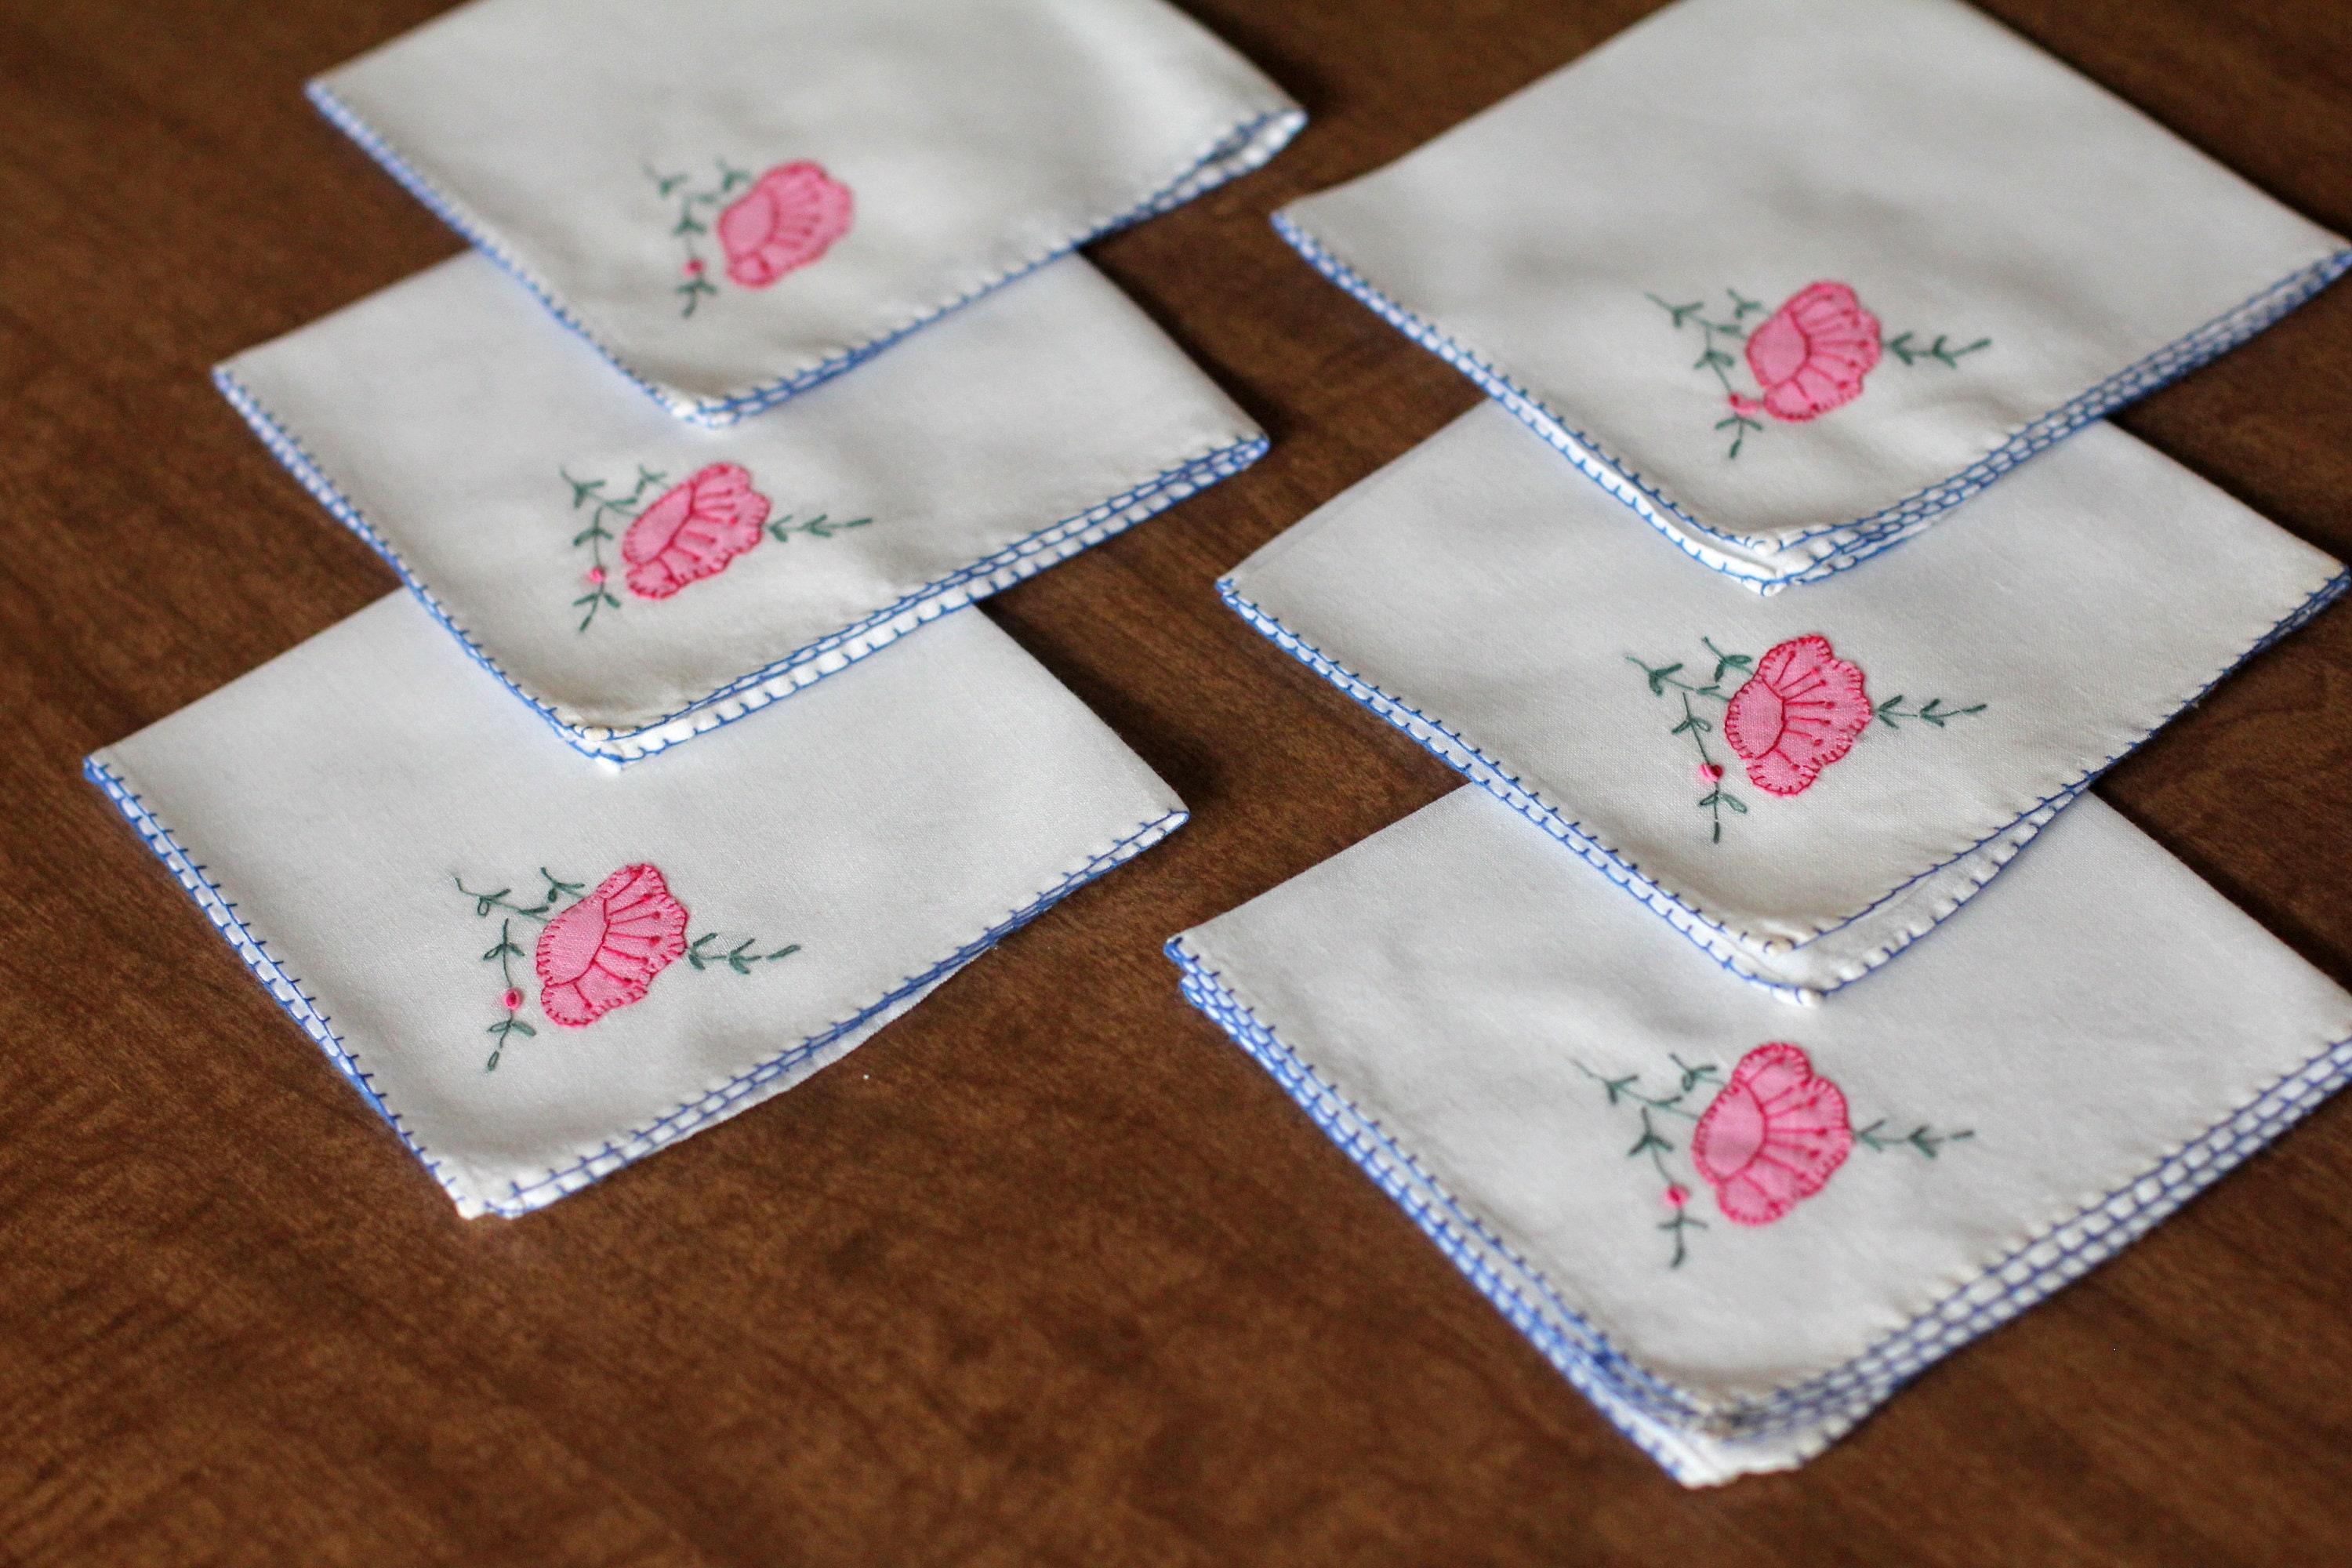 Washed Linen Napkins-Set of 4-6-8 Washed Linen napkins in blush pink  -dining napkins 16.5''x16.5''(42x42cm)Wedding linen napkins